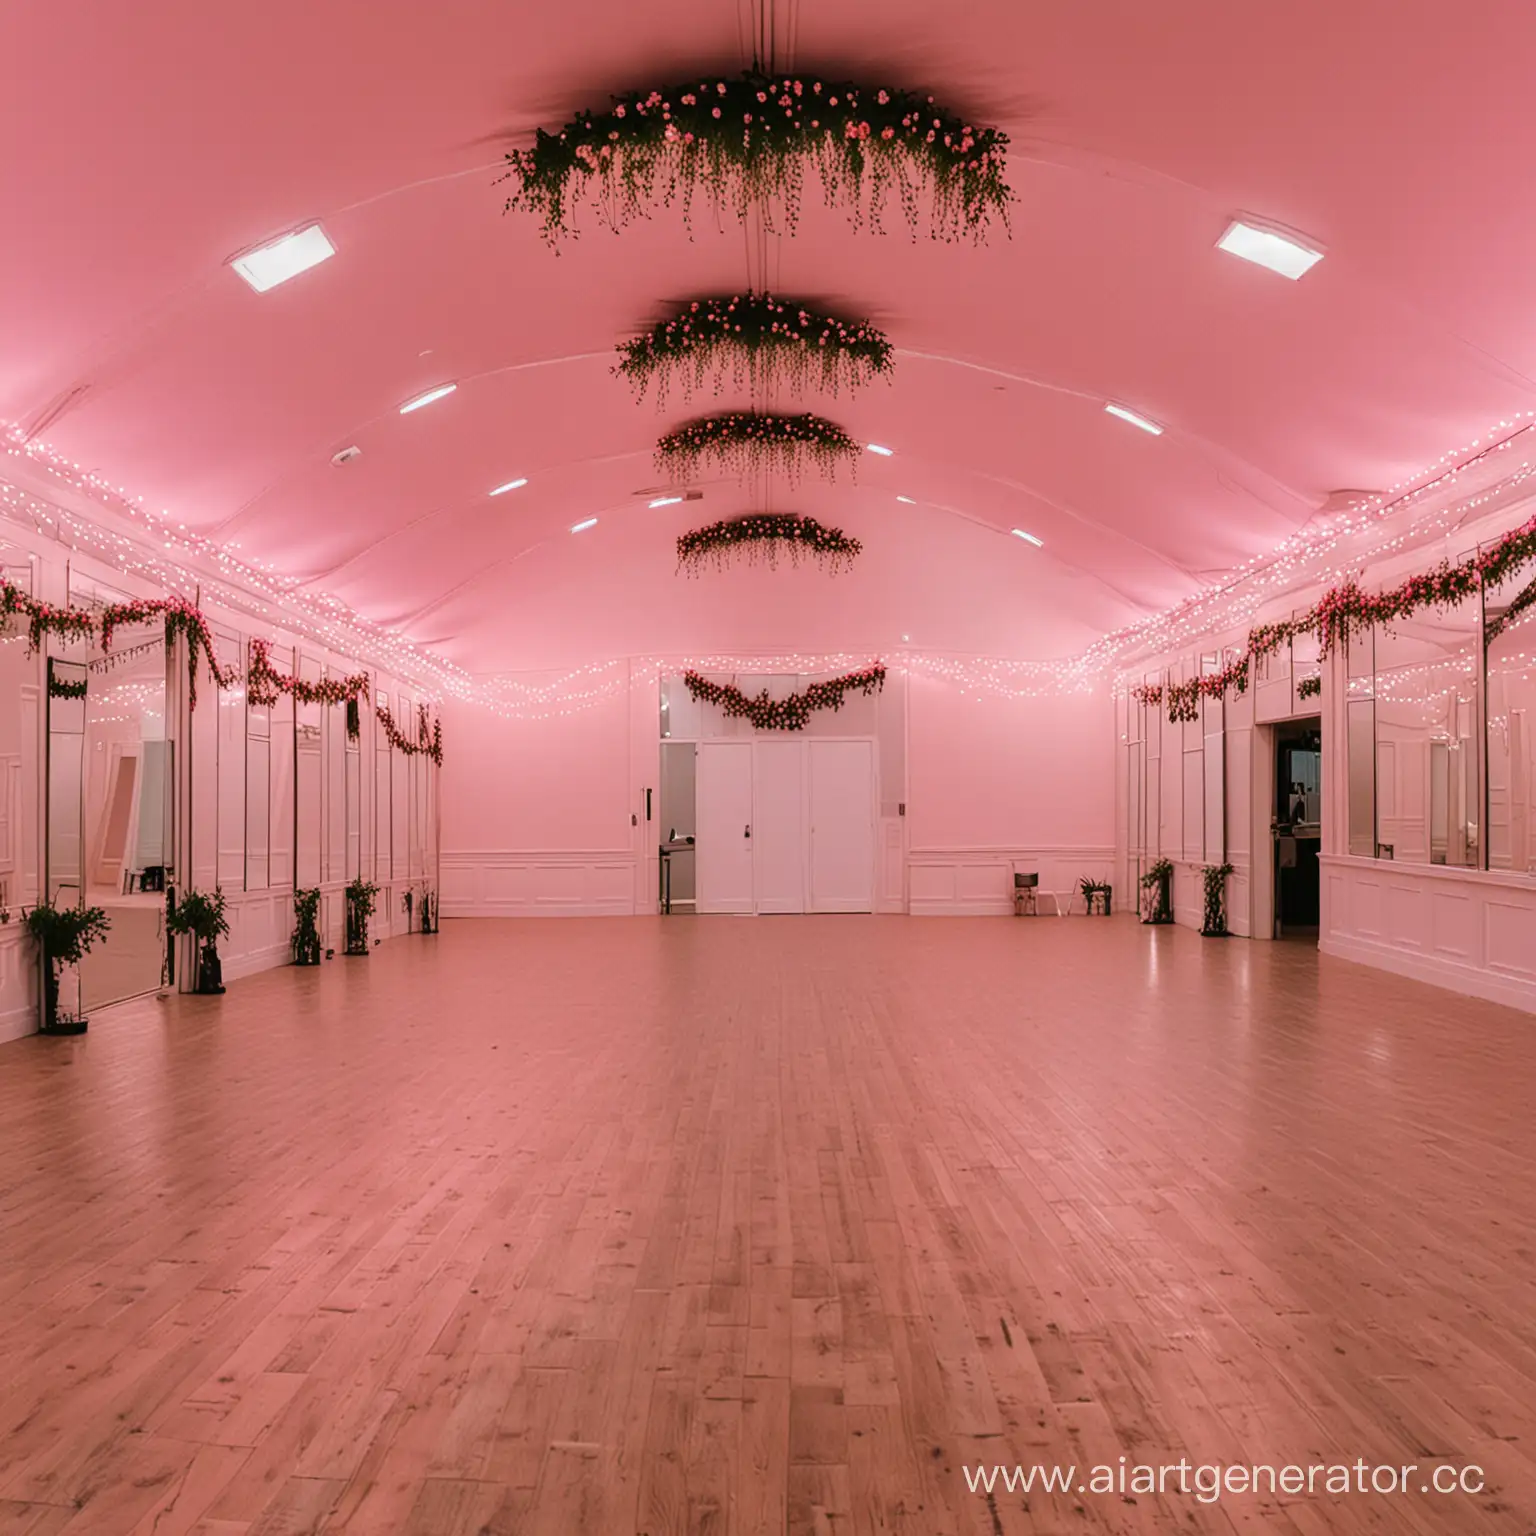 танцевальный зал с розовым освещением, большими зеркалами и гирляндой
